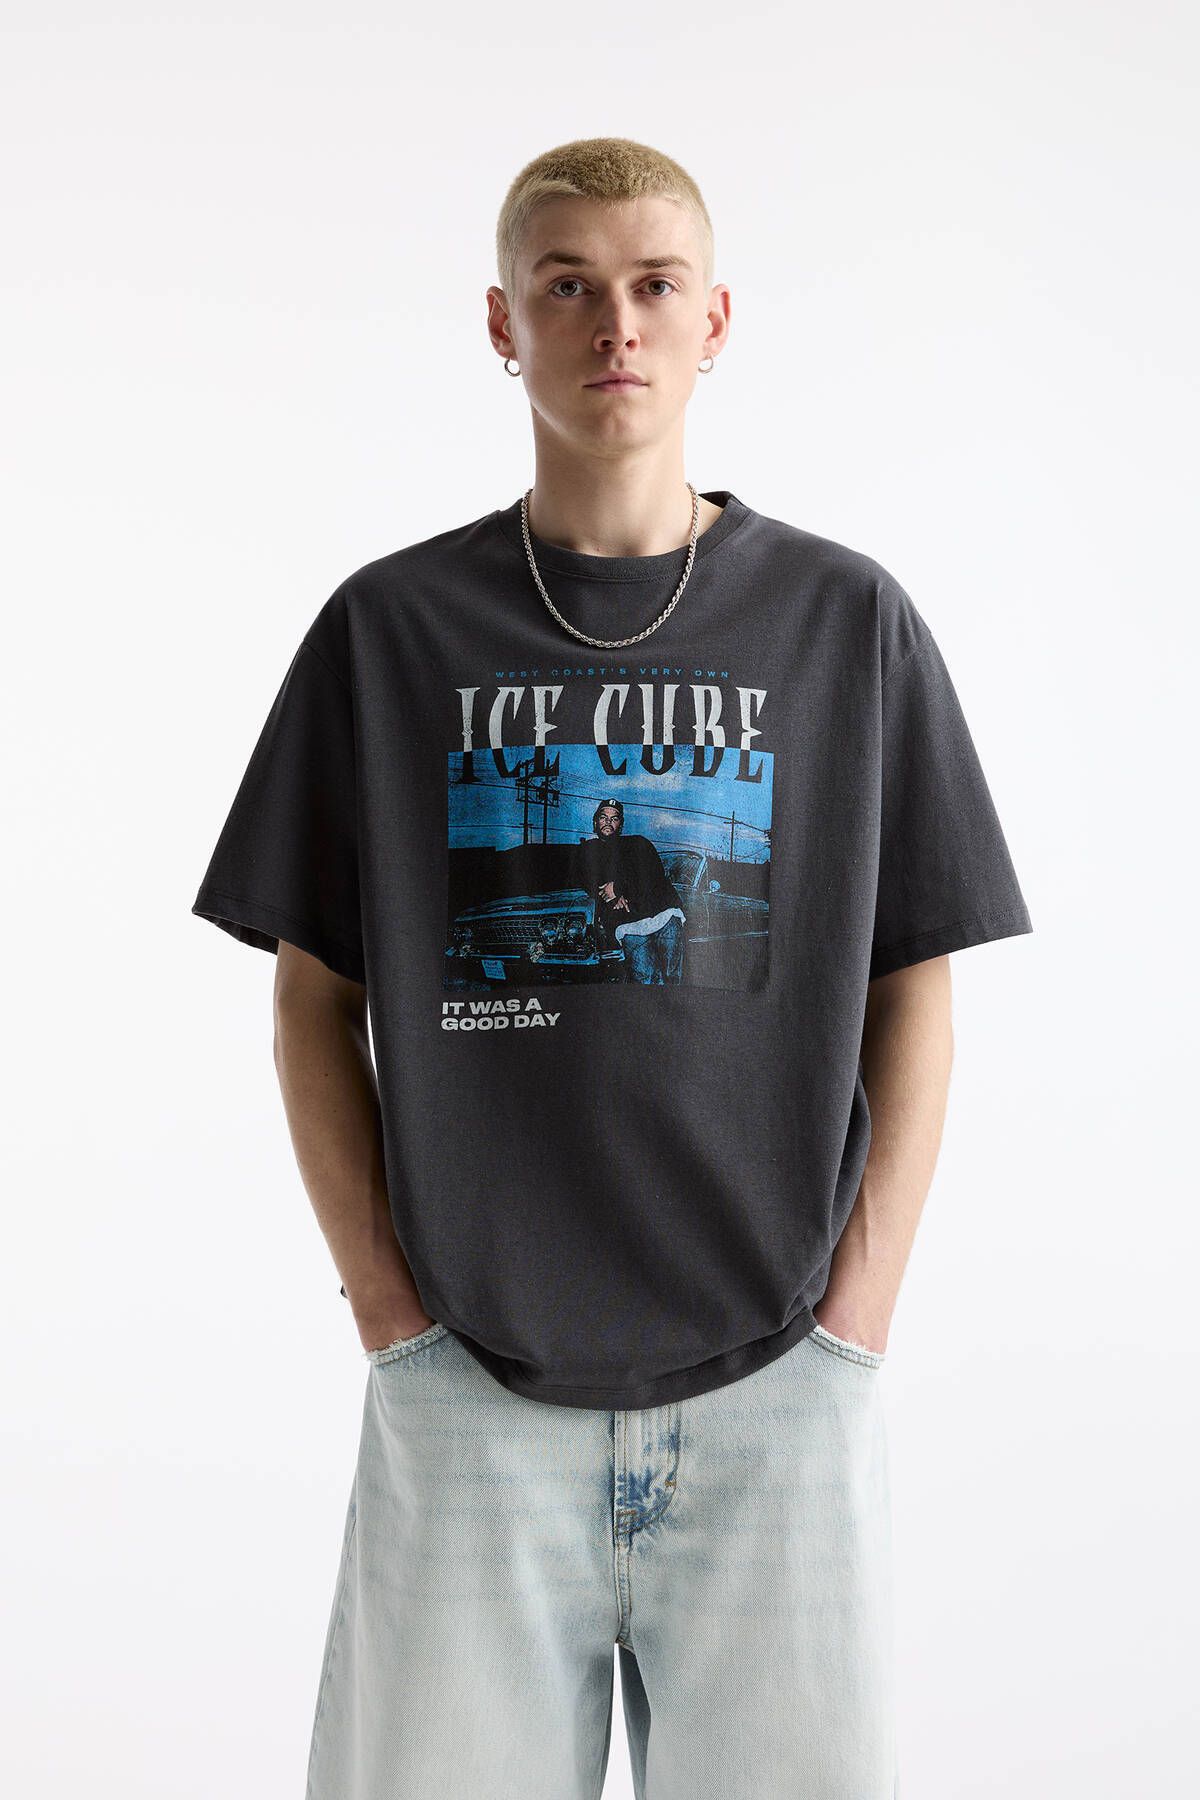 Pull & Bear "Ice Cube" yazılı ve kısa kollu t-shirt